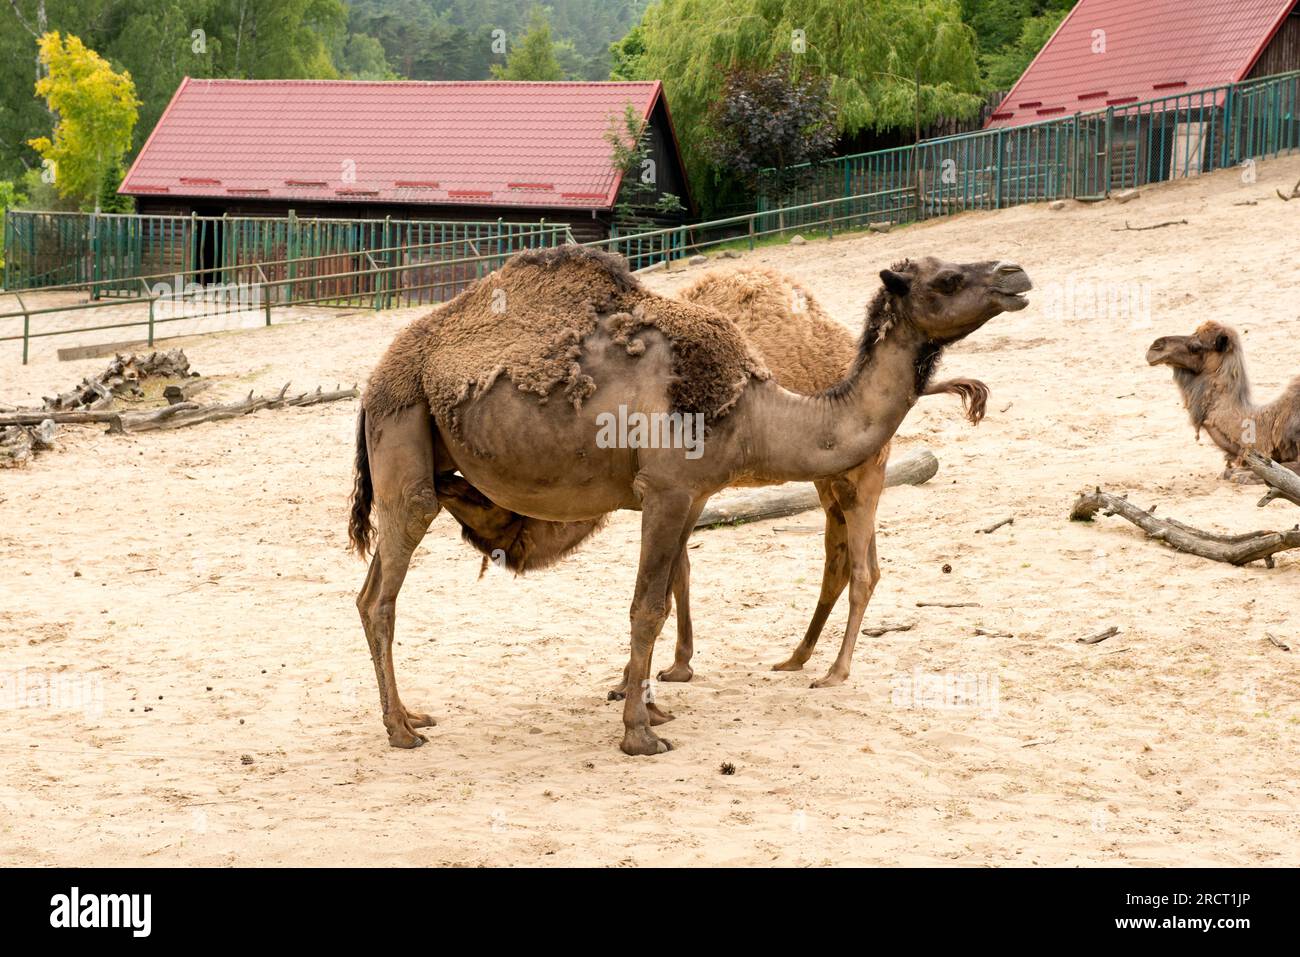 Dromadaire Camelus dromedarius ou Arabian Camel adulte et veau allaitant sur le lait dans le zoo de Gdansk, Gdansk, Pologne, Europe, UE Banque D'Images